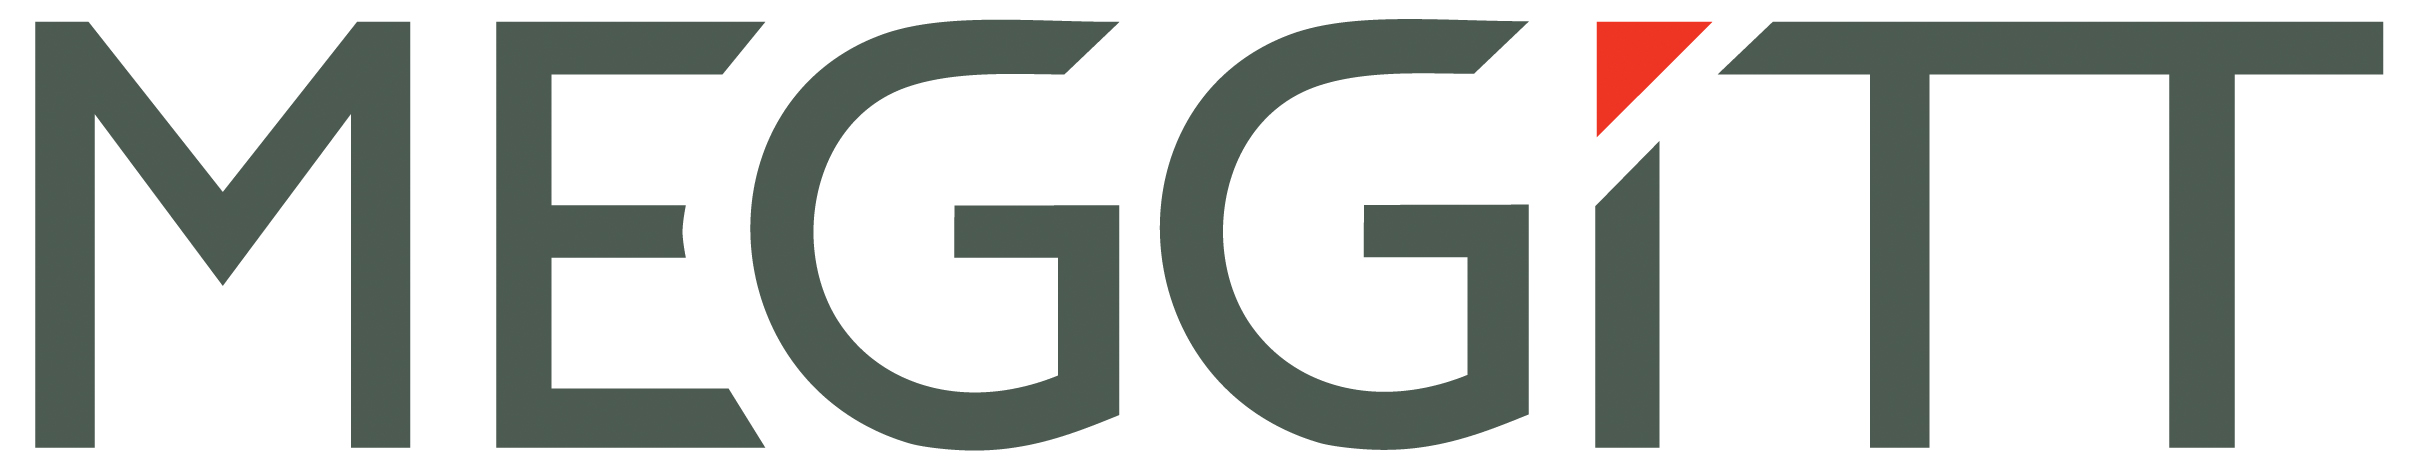 MEGGITT Logo (PMS446) RGB